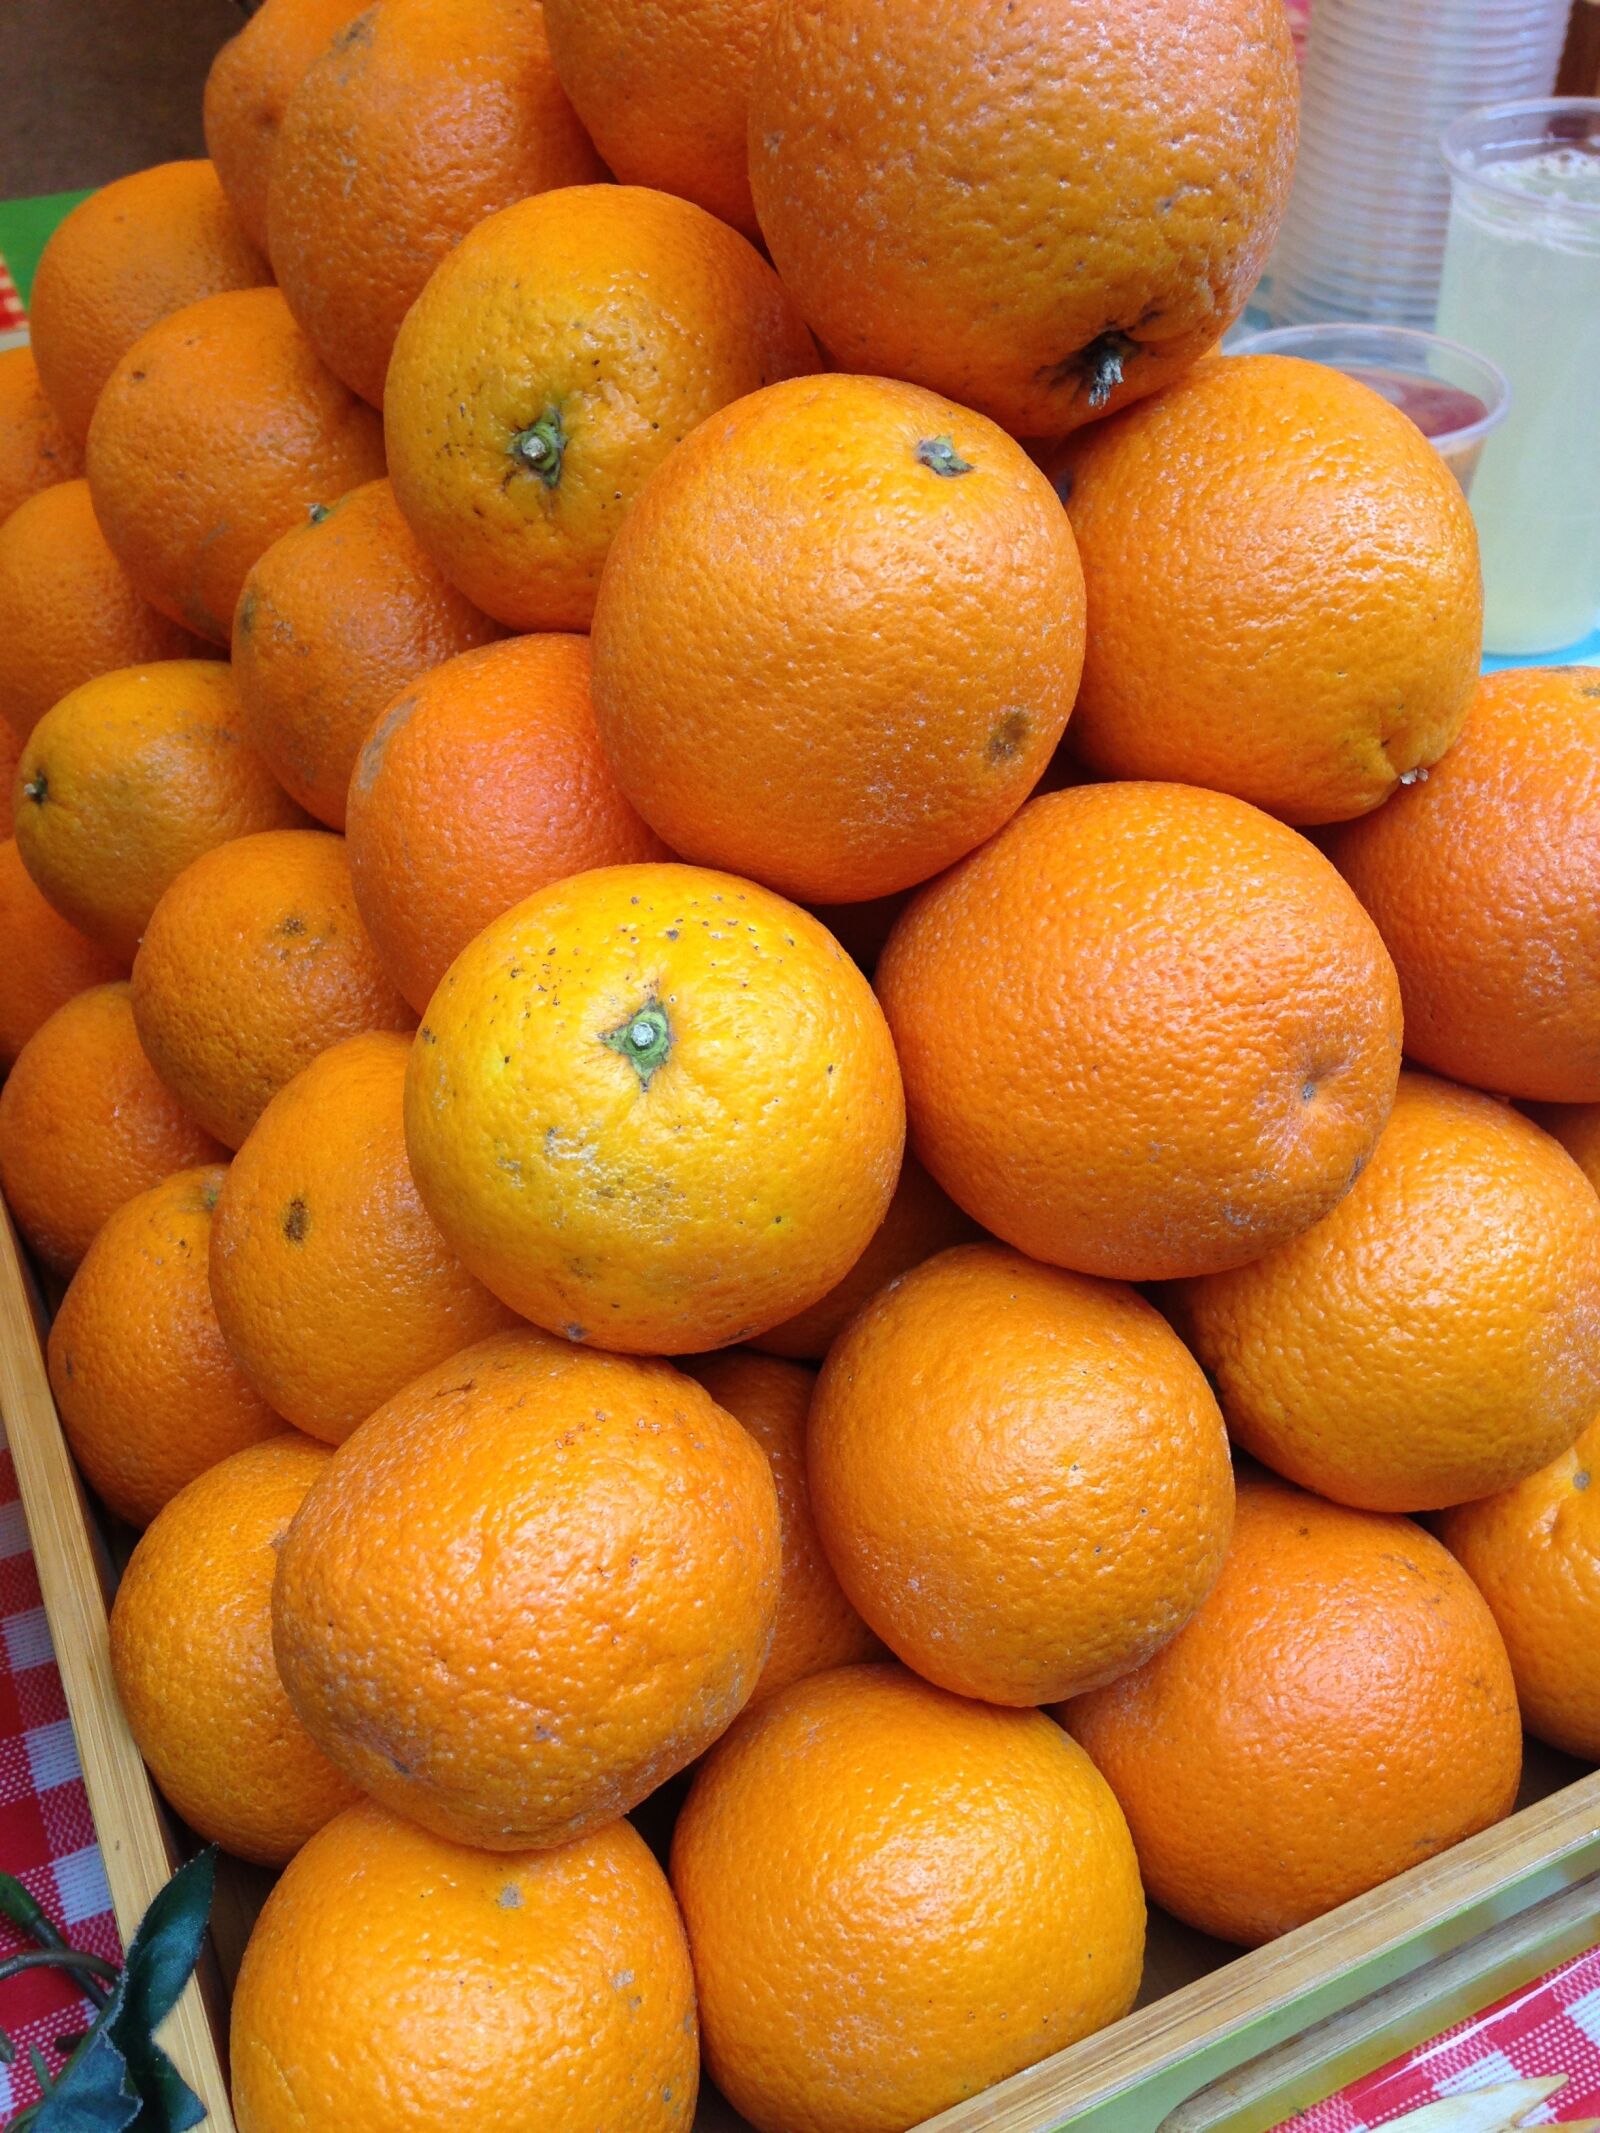 Apple iPhone 5 sample photo. Orange, fruit, fresh photography